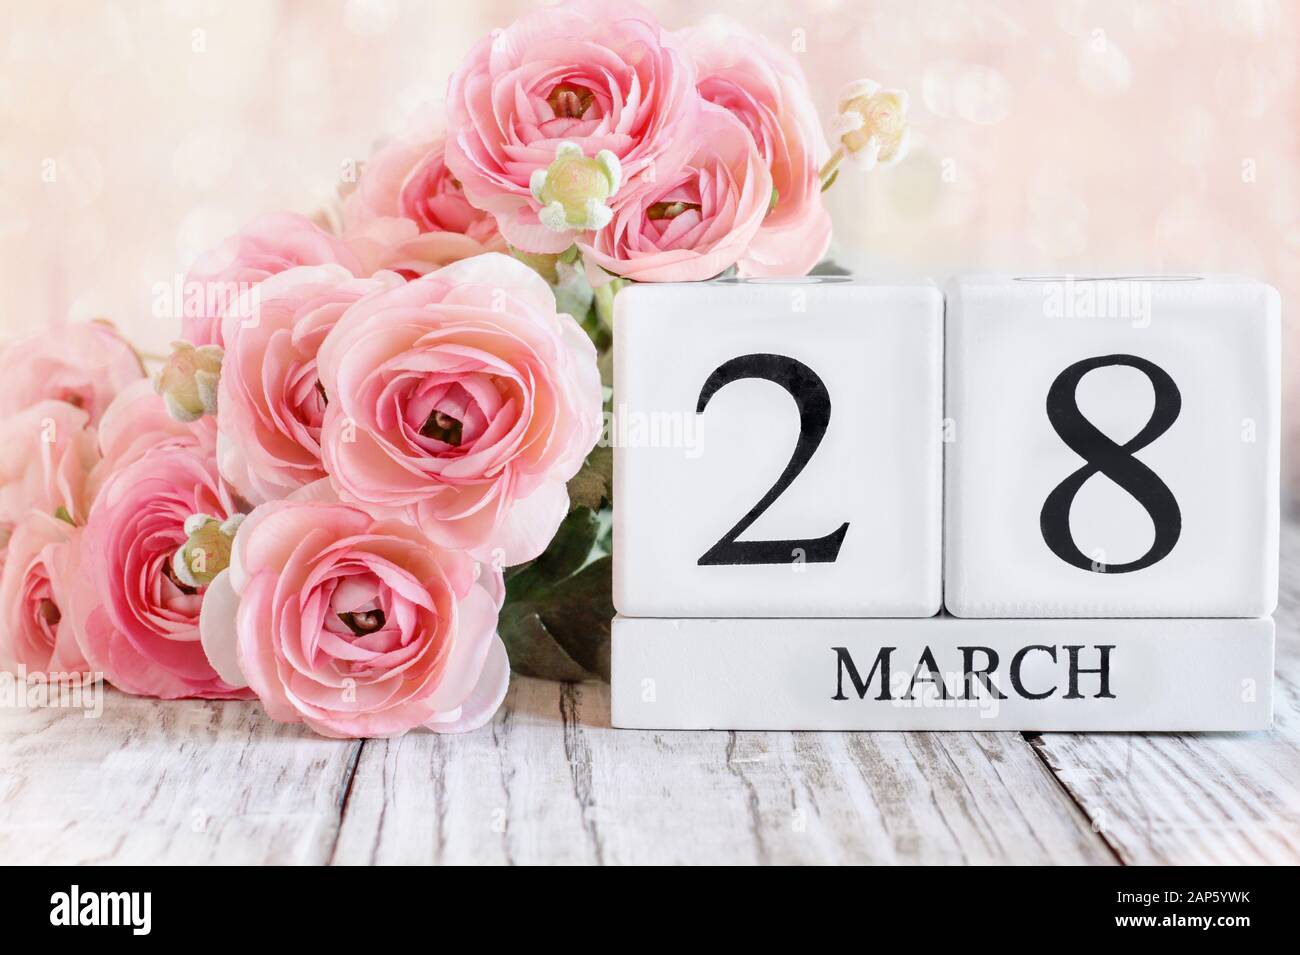 Blocs calendrier en bois blanc avec la date du 28 mars et fleurs roses de ranunculus sur une table en bois. Mise au point sélective avec arrière-plan flou. Banque D'Images